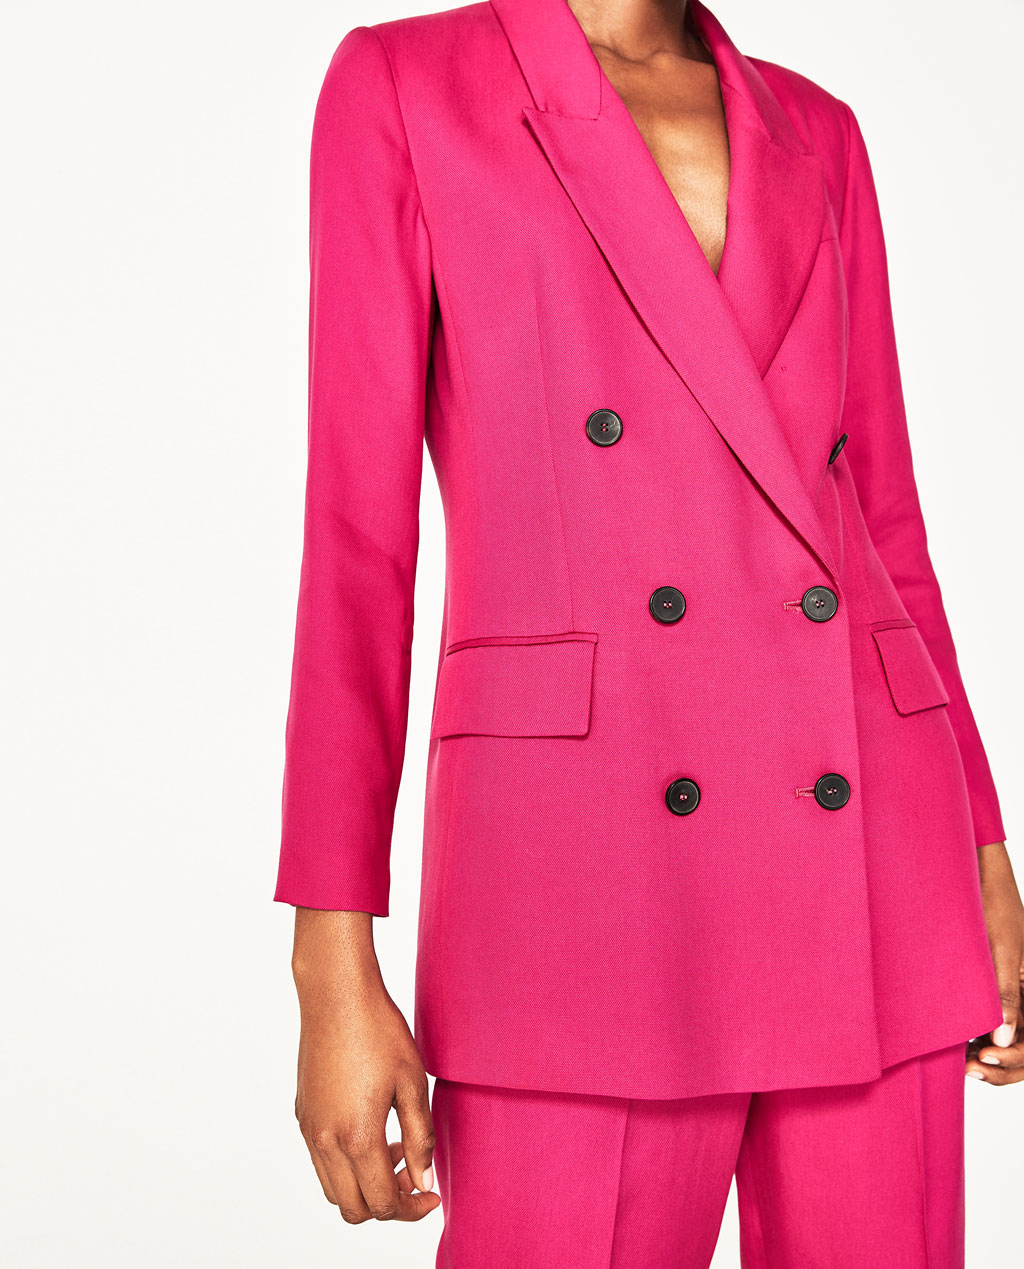 zara pink suit